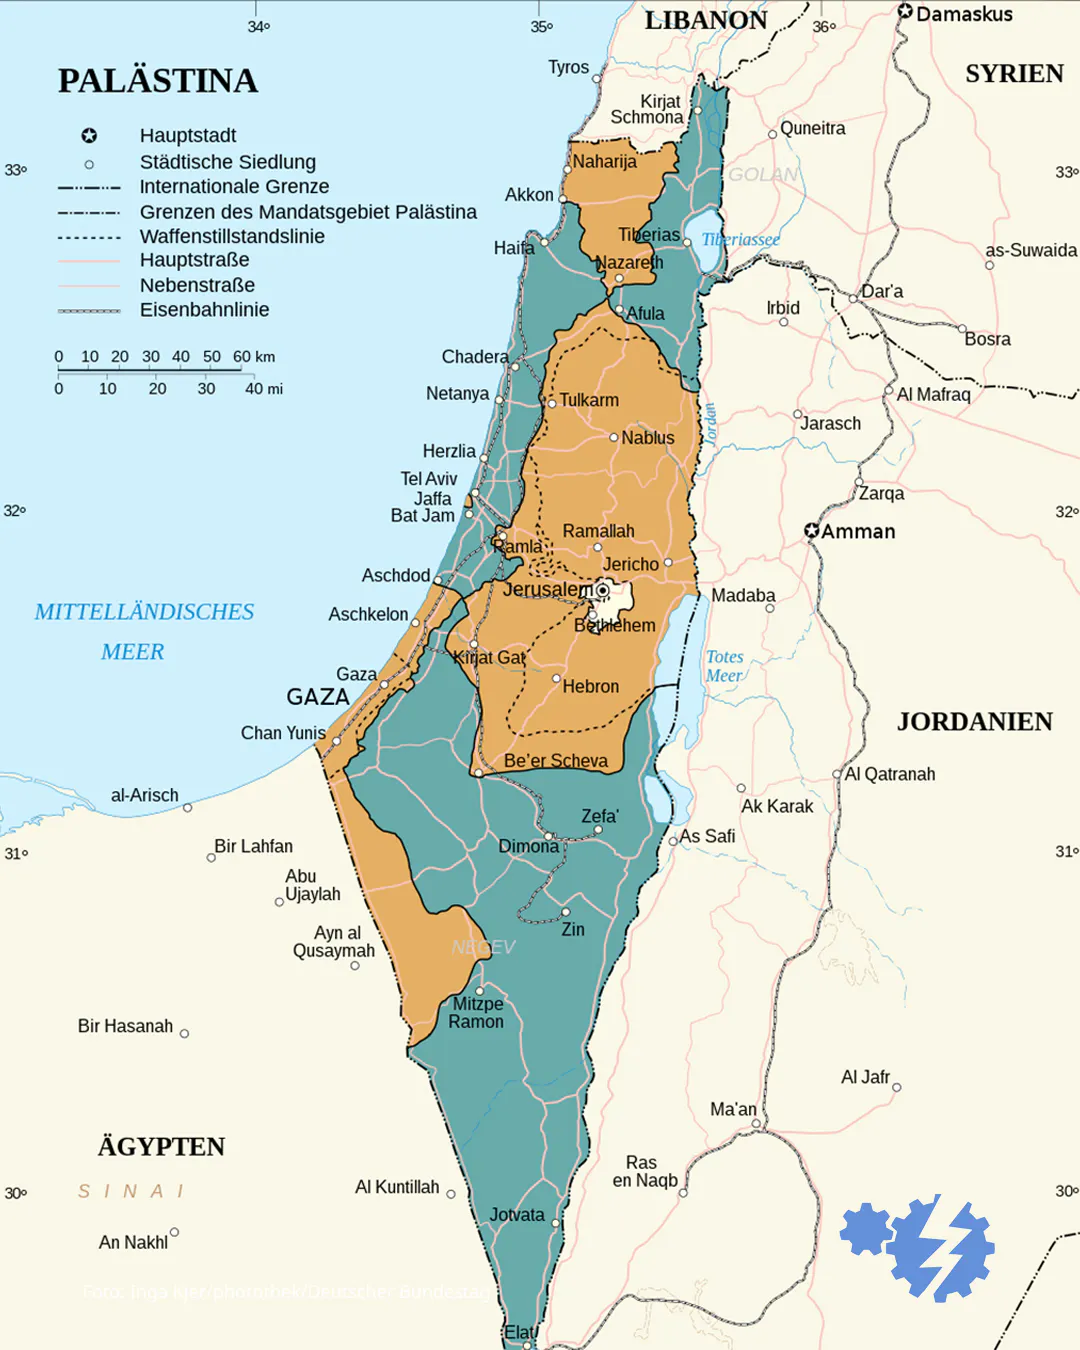 Karte des heutigen Israel mit den von der UN vorgesehenen zwei Staaten.